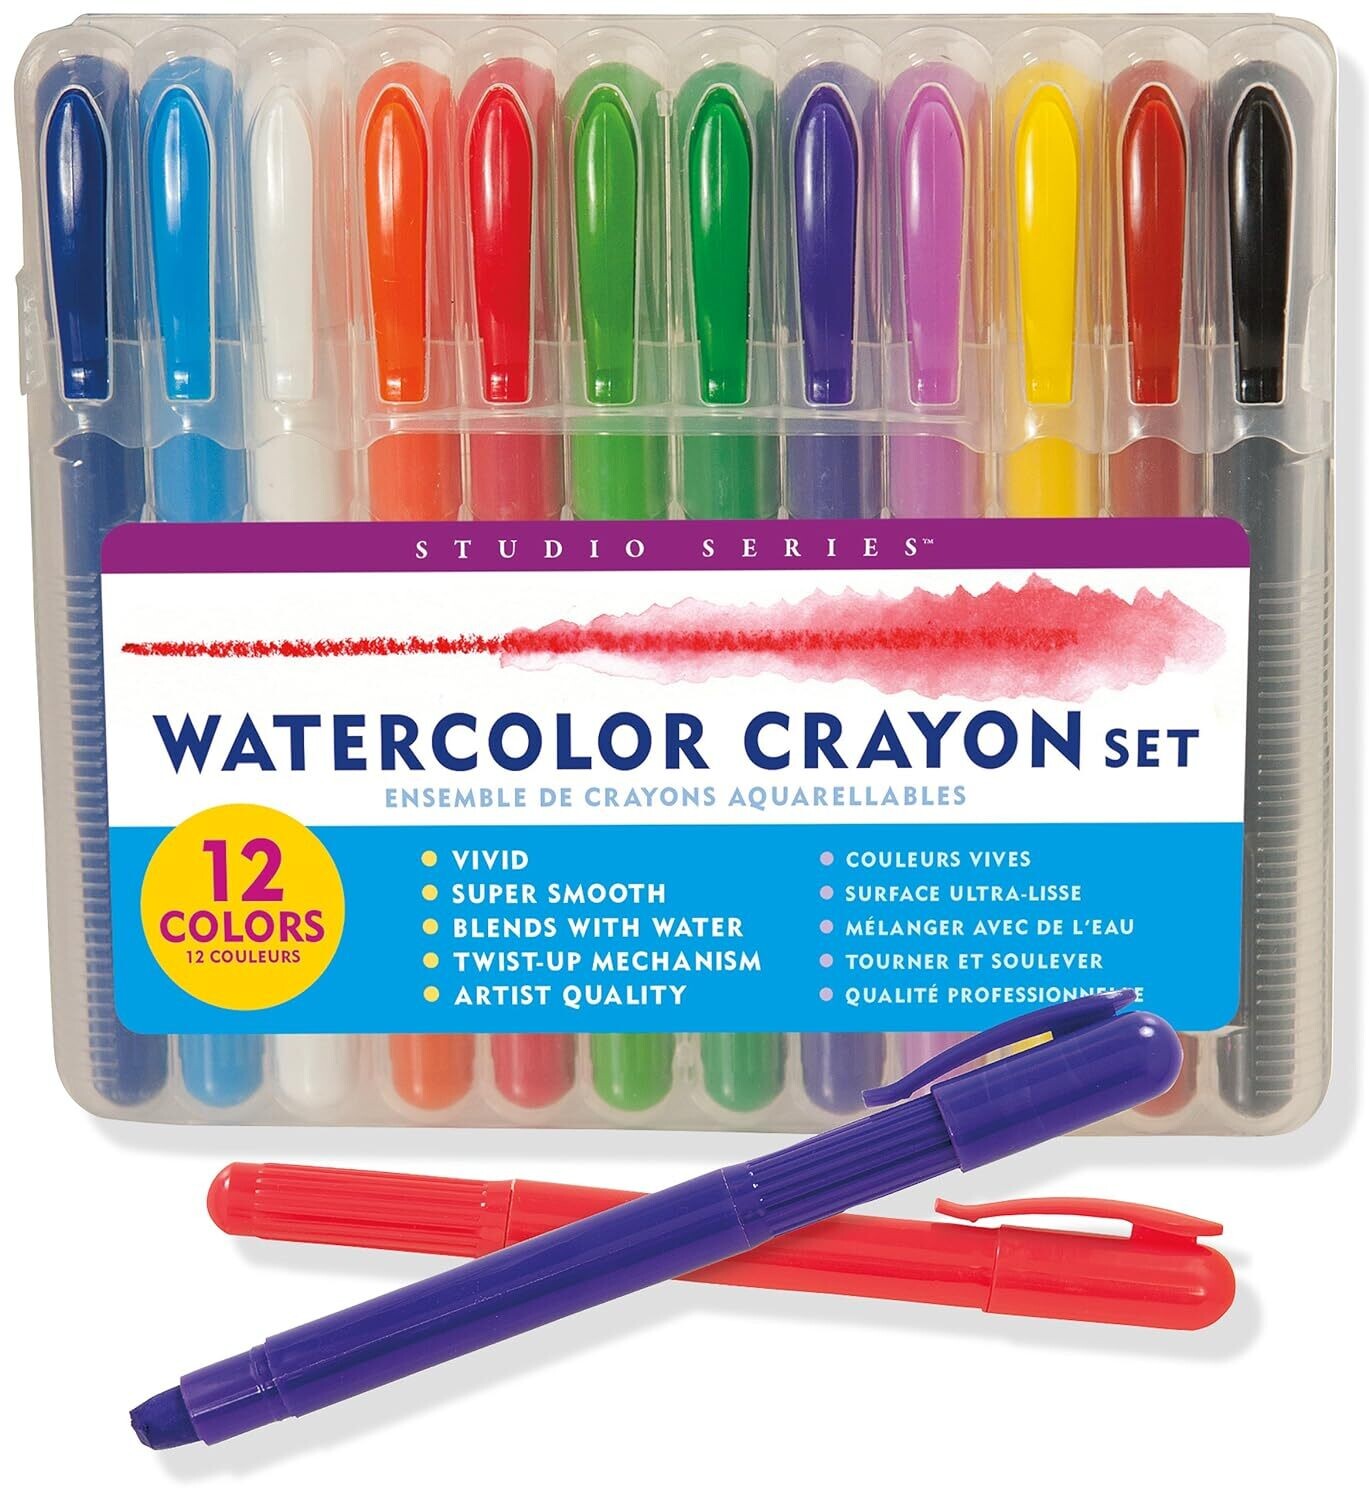 Studio Series Watercolor Crayon 20537